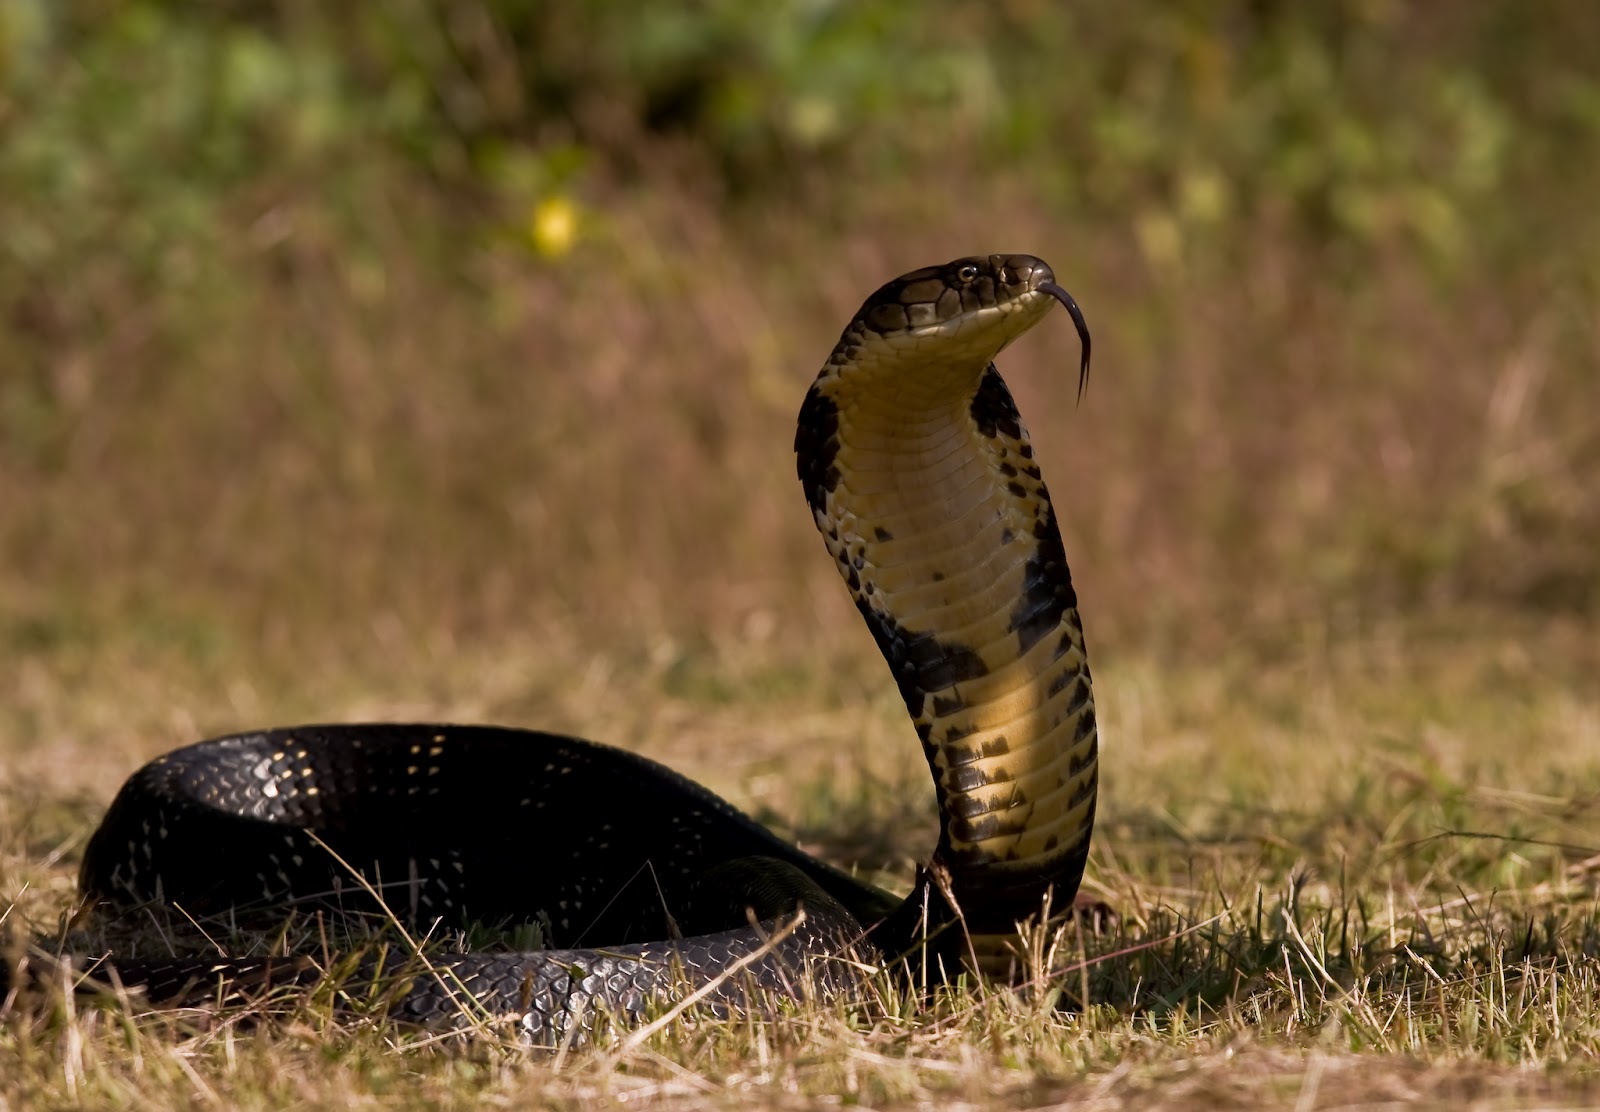 king cobra wallpaper,vertebrate,snake,reptile,king cobra,terrestrial animal